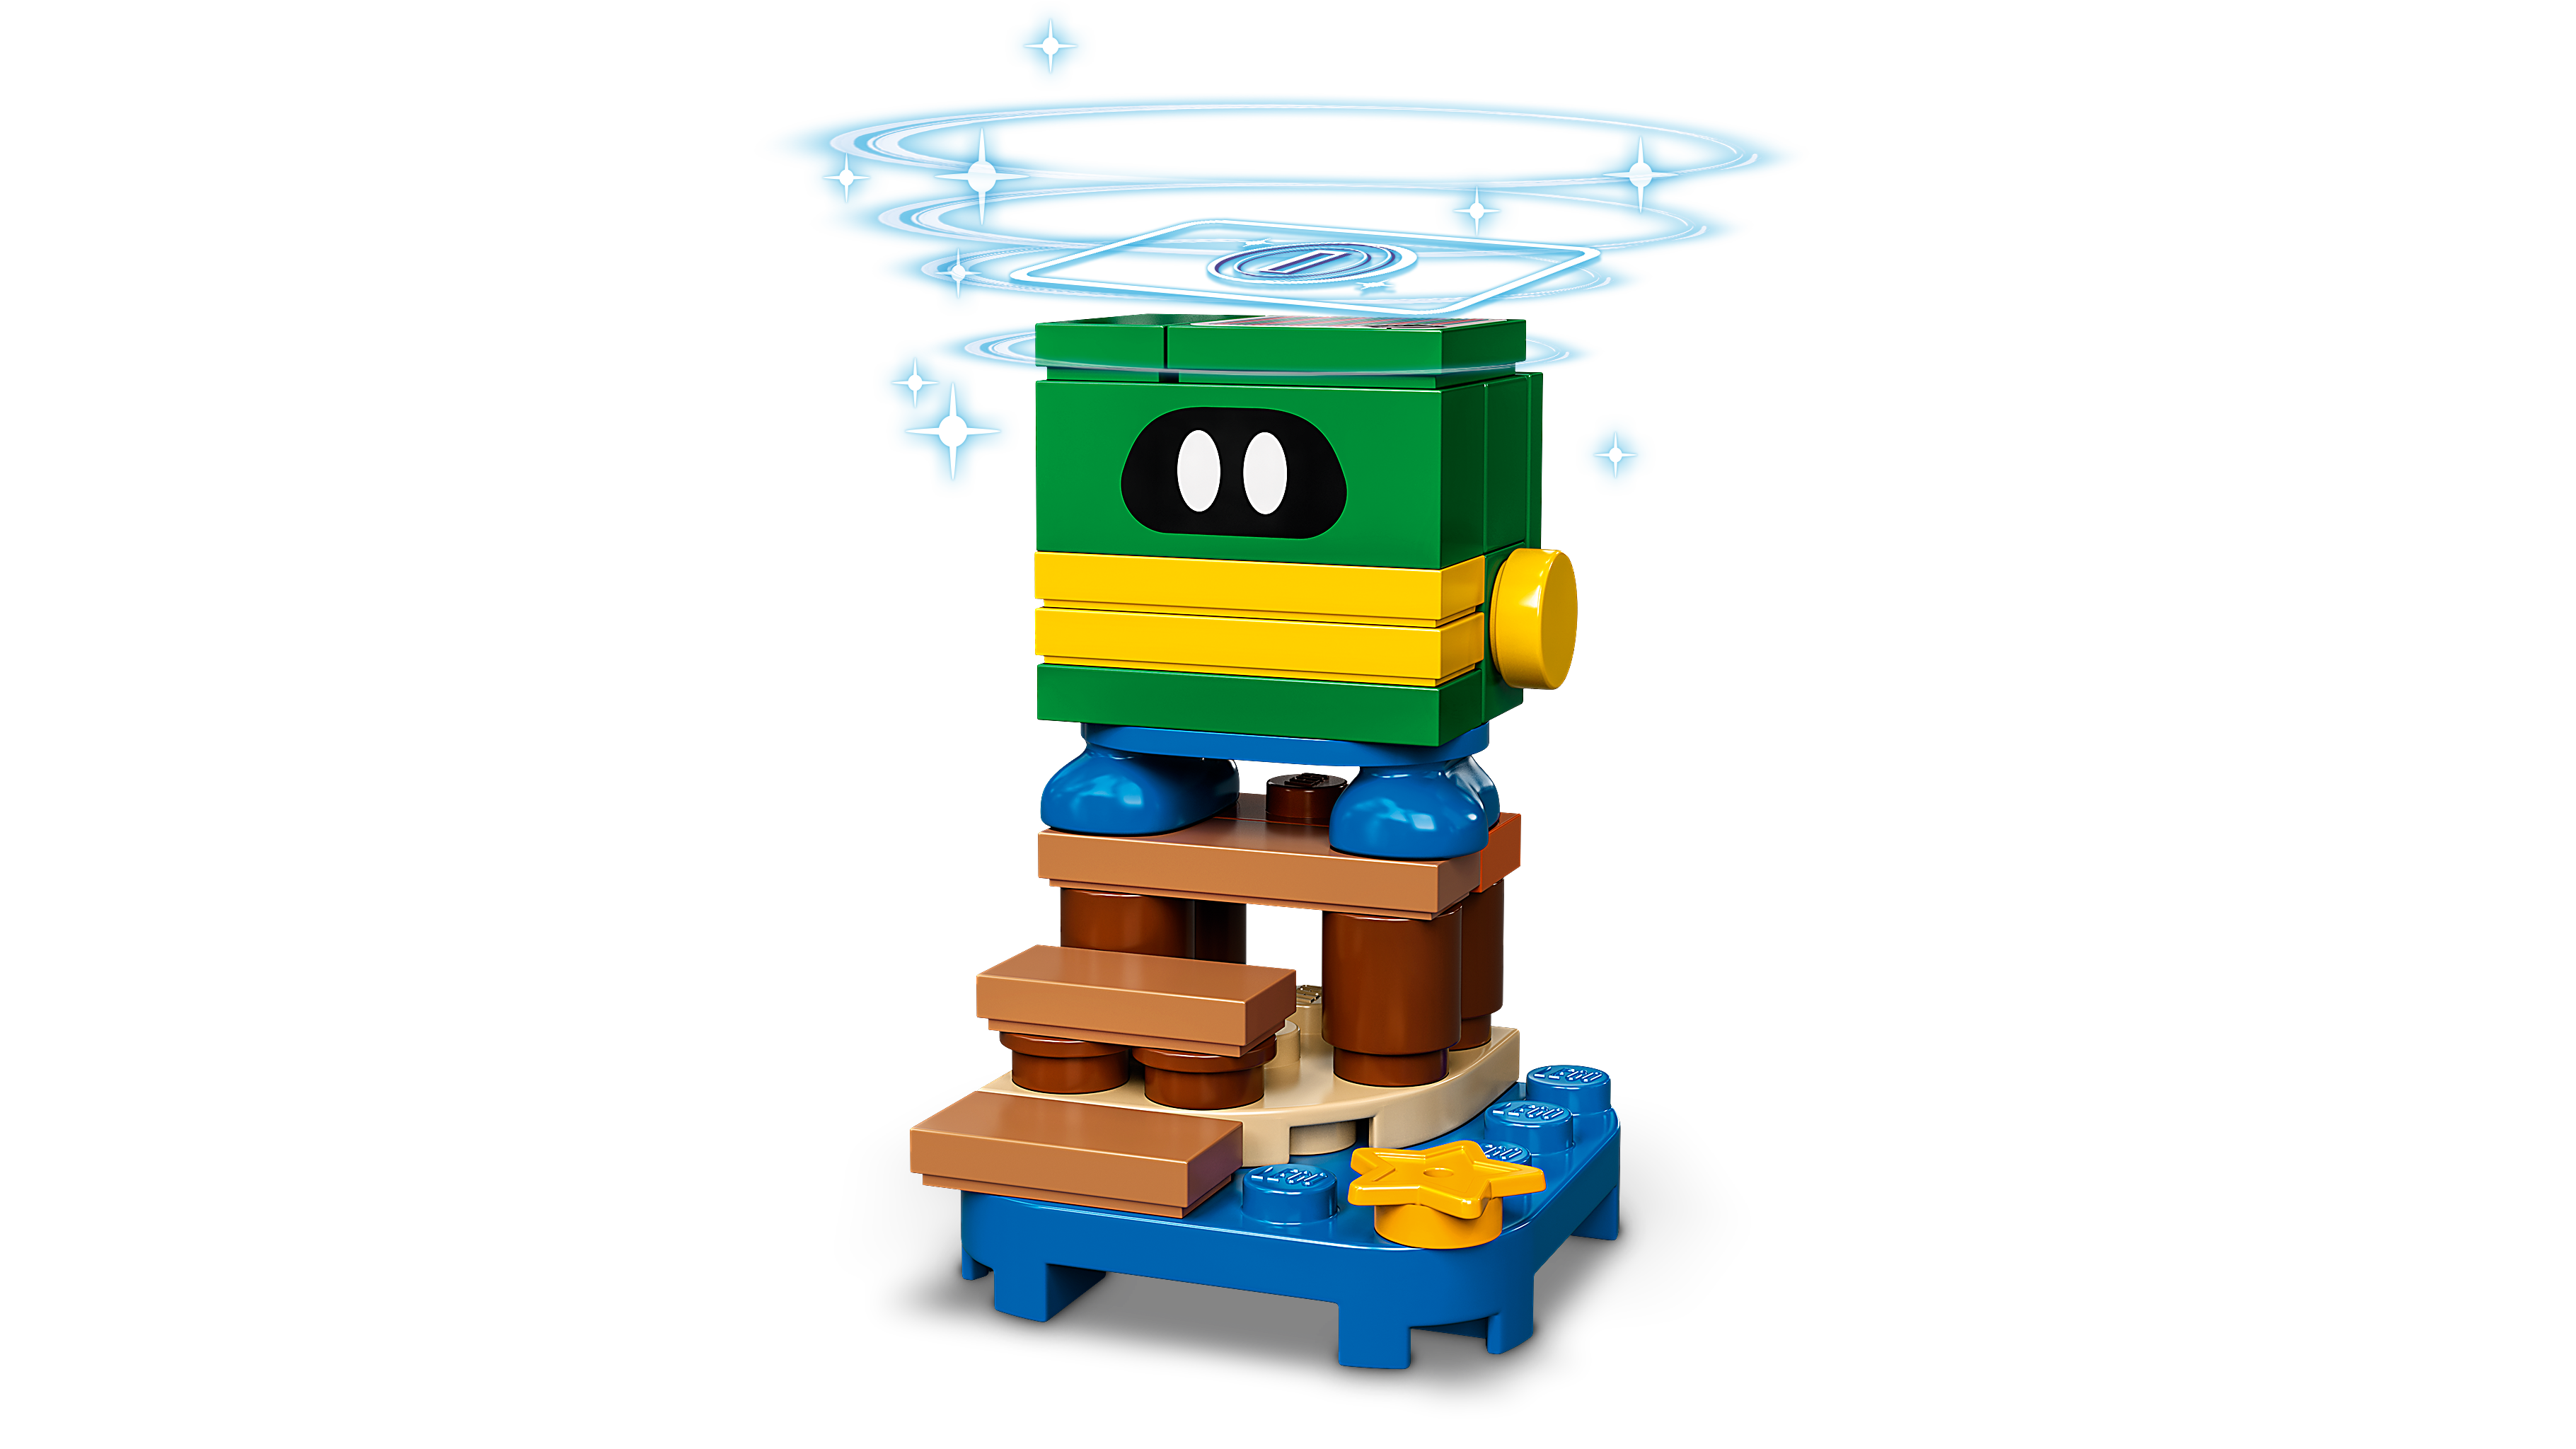 PC/タブレット デスクトップ型PC キャラクター パック シリーズ4 71402 - レゴ®スーパーマリオ - LEGO 